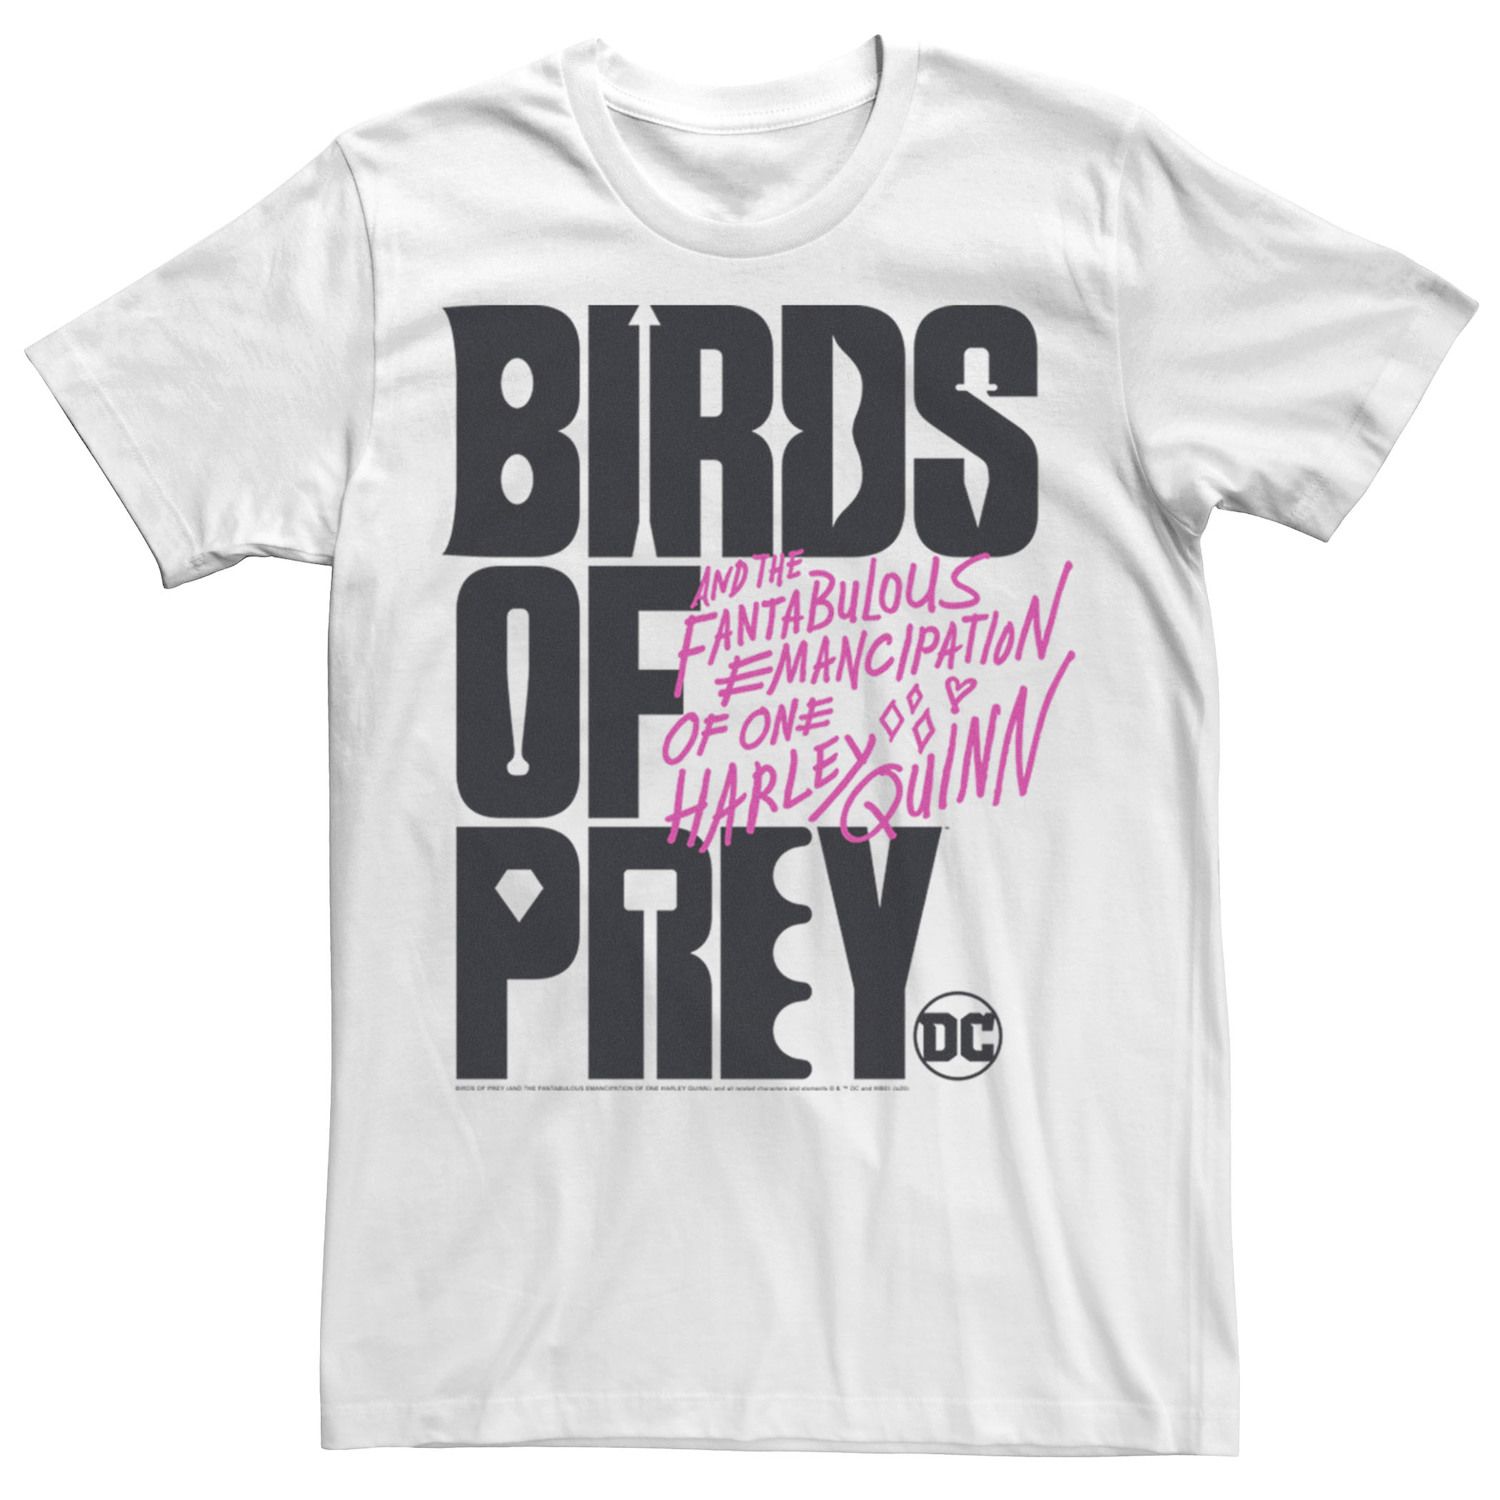 Мужская футболка с текстовым логотипом «Хищные птицы» DC Comics наклейка патч для одежды priority dc хищные птицы